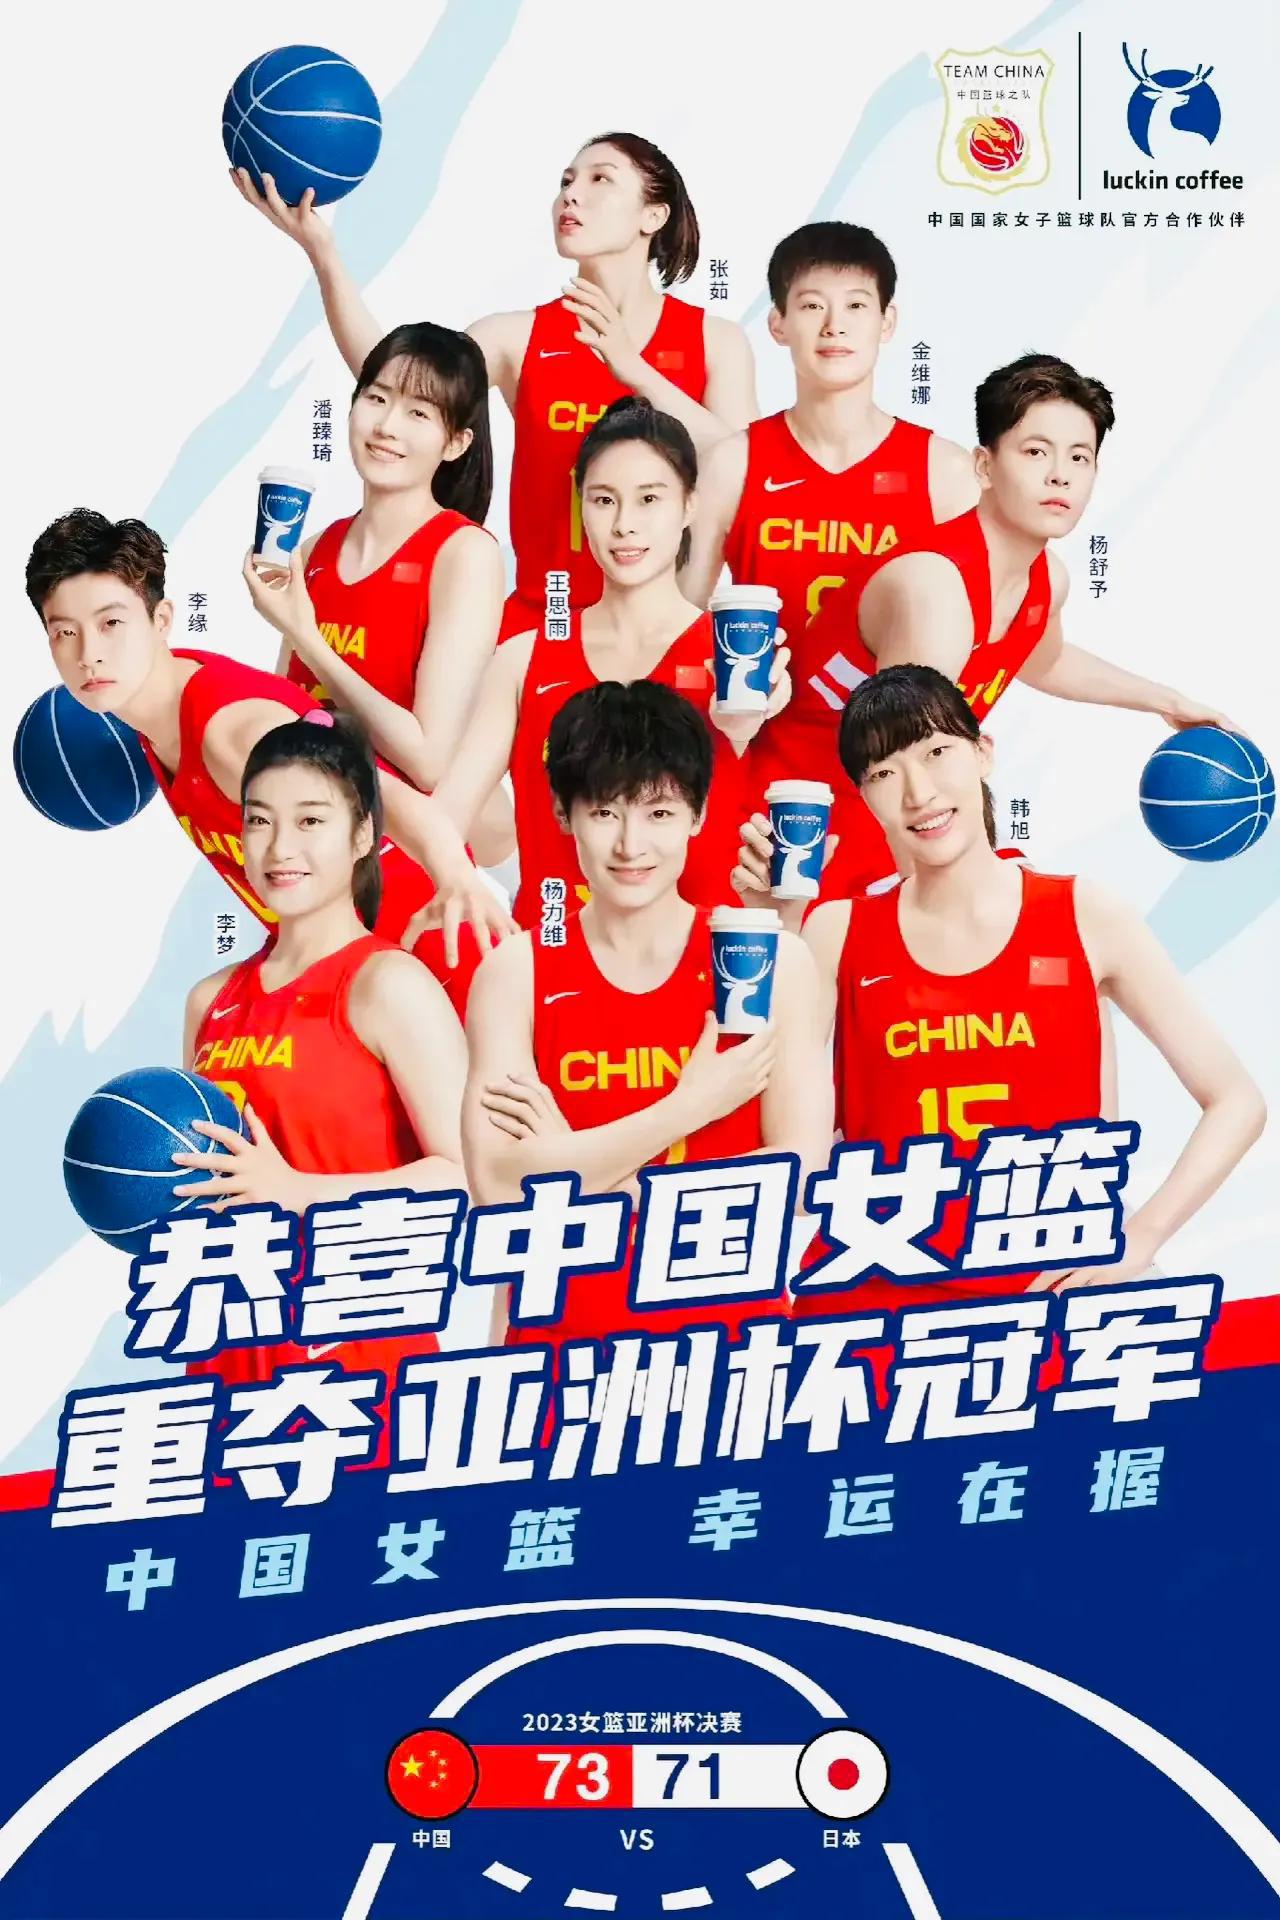 有意思，李梦凭实力又重新登上中国女篮官方合作伙伴瑞幸咖啡的海报！本次女篮亚洲杯前(2)